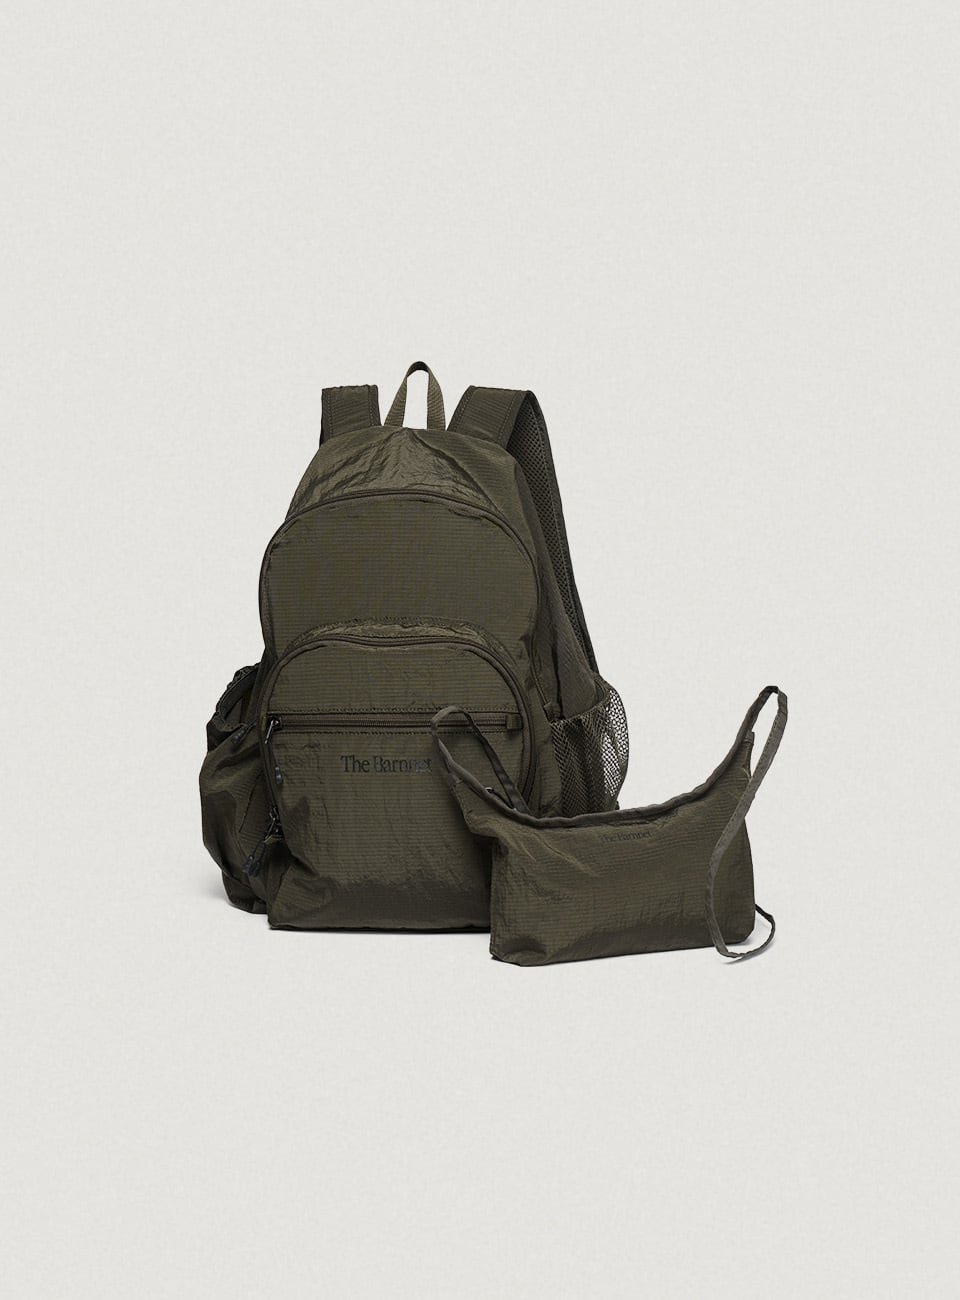 the barnnet  backpack